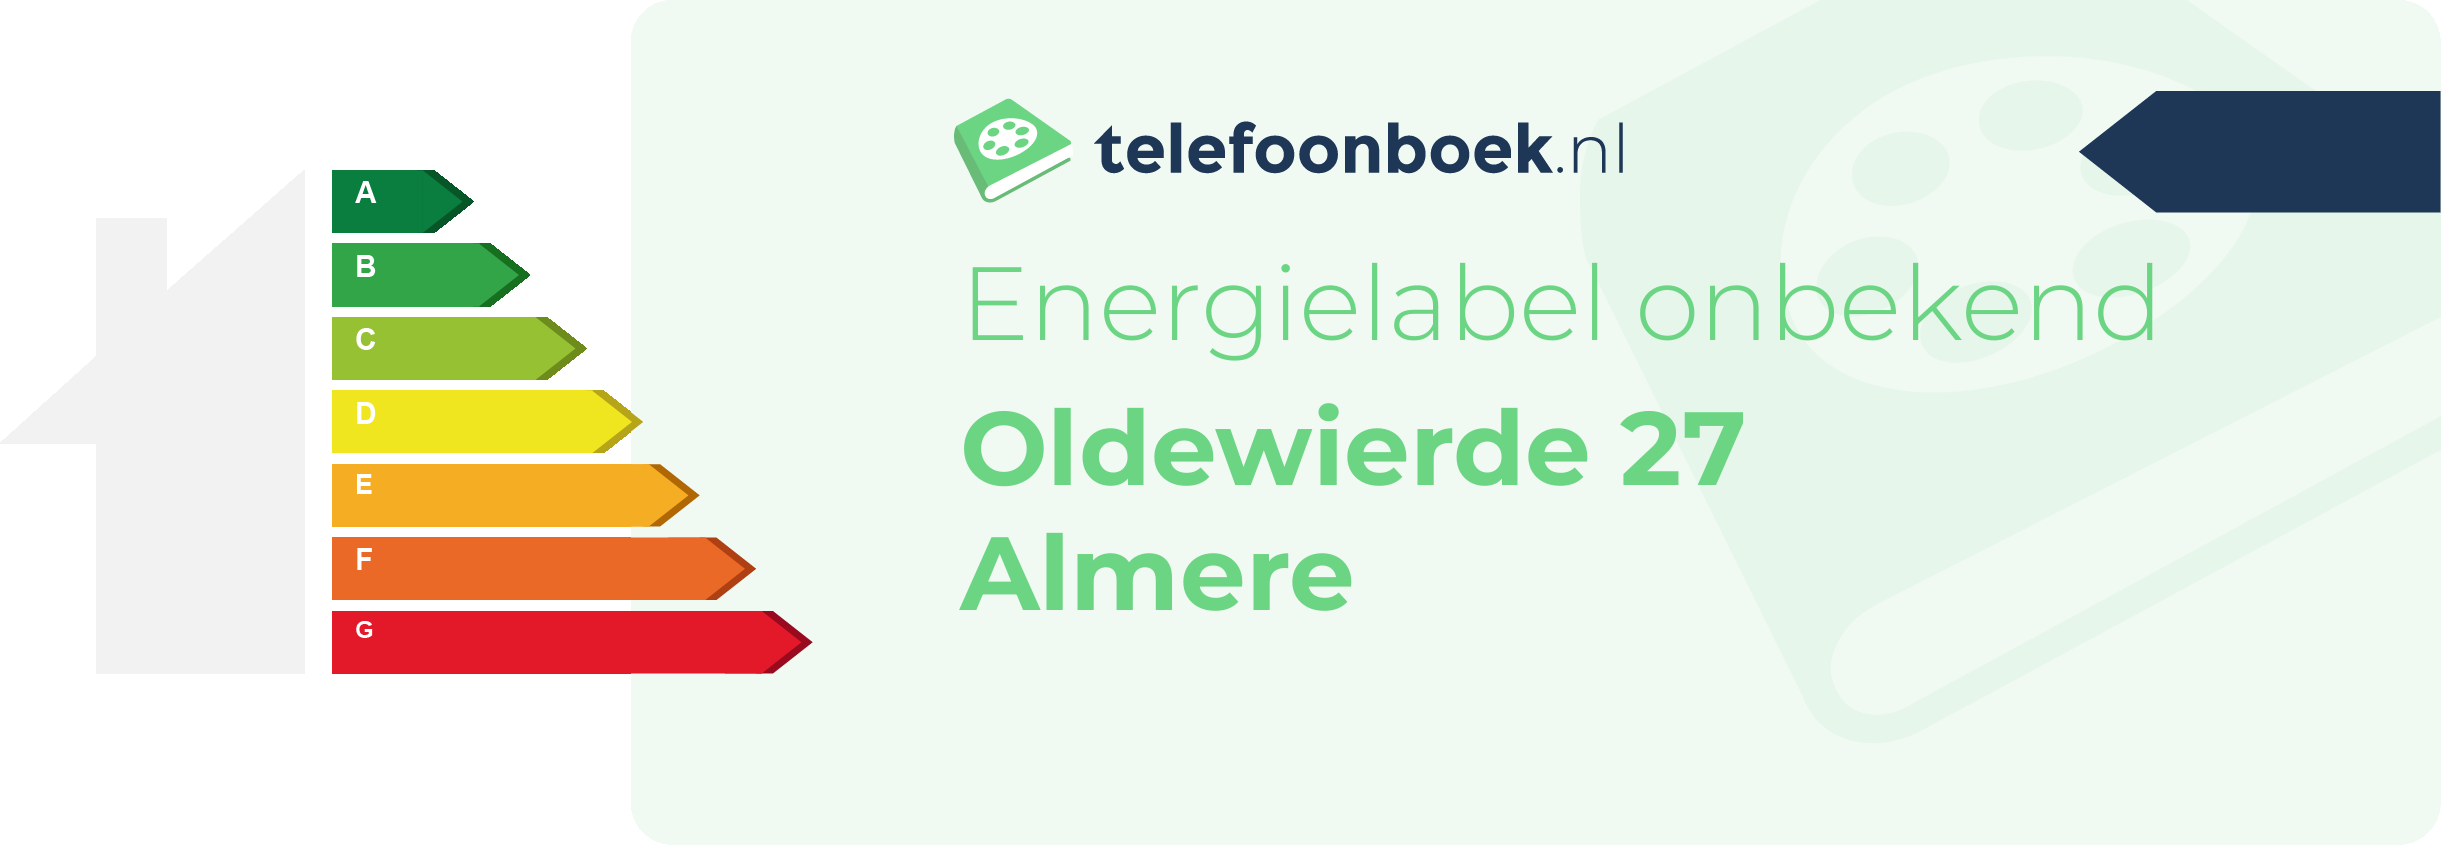 Energielabel Oldewierde 27 Almere